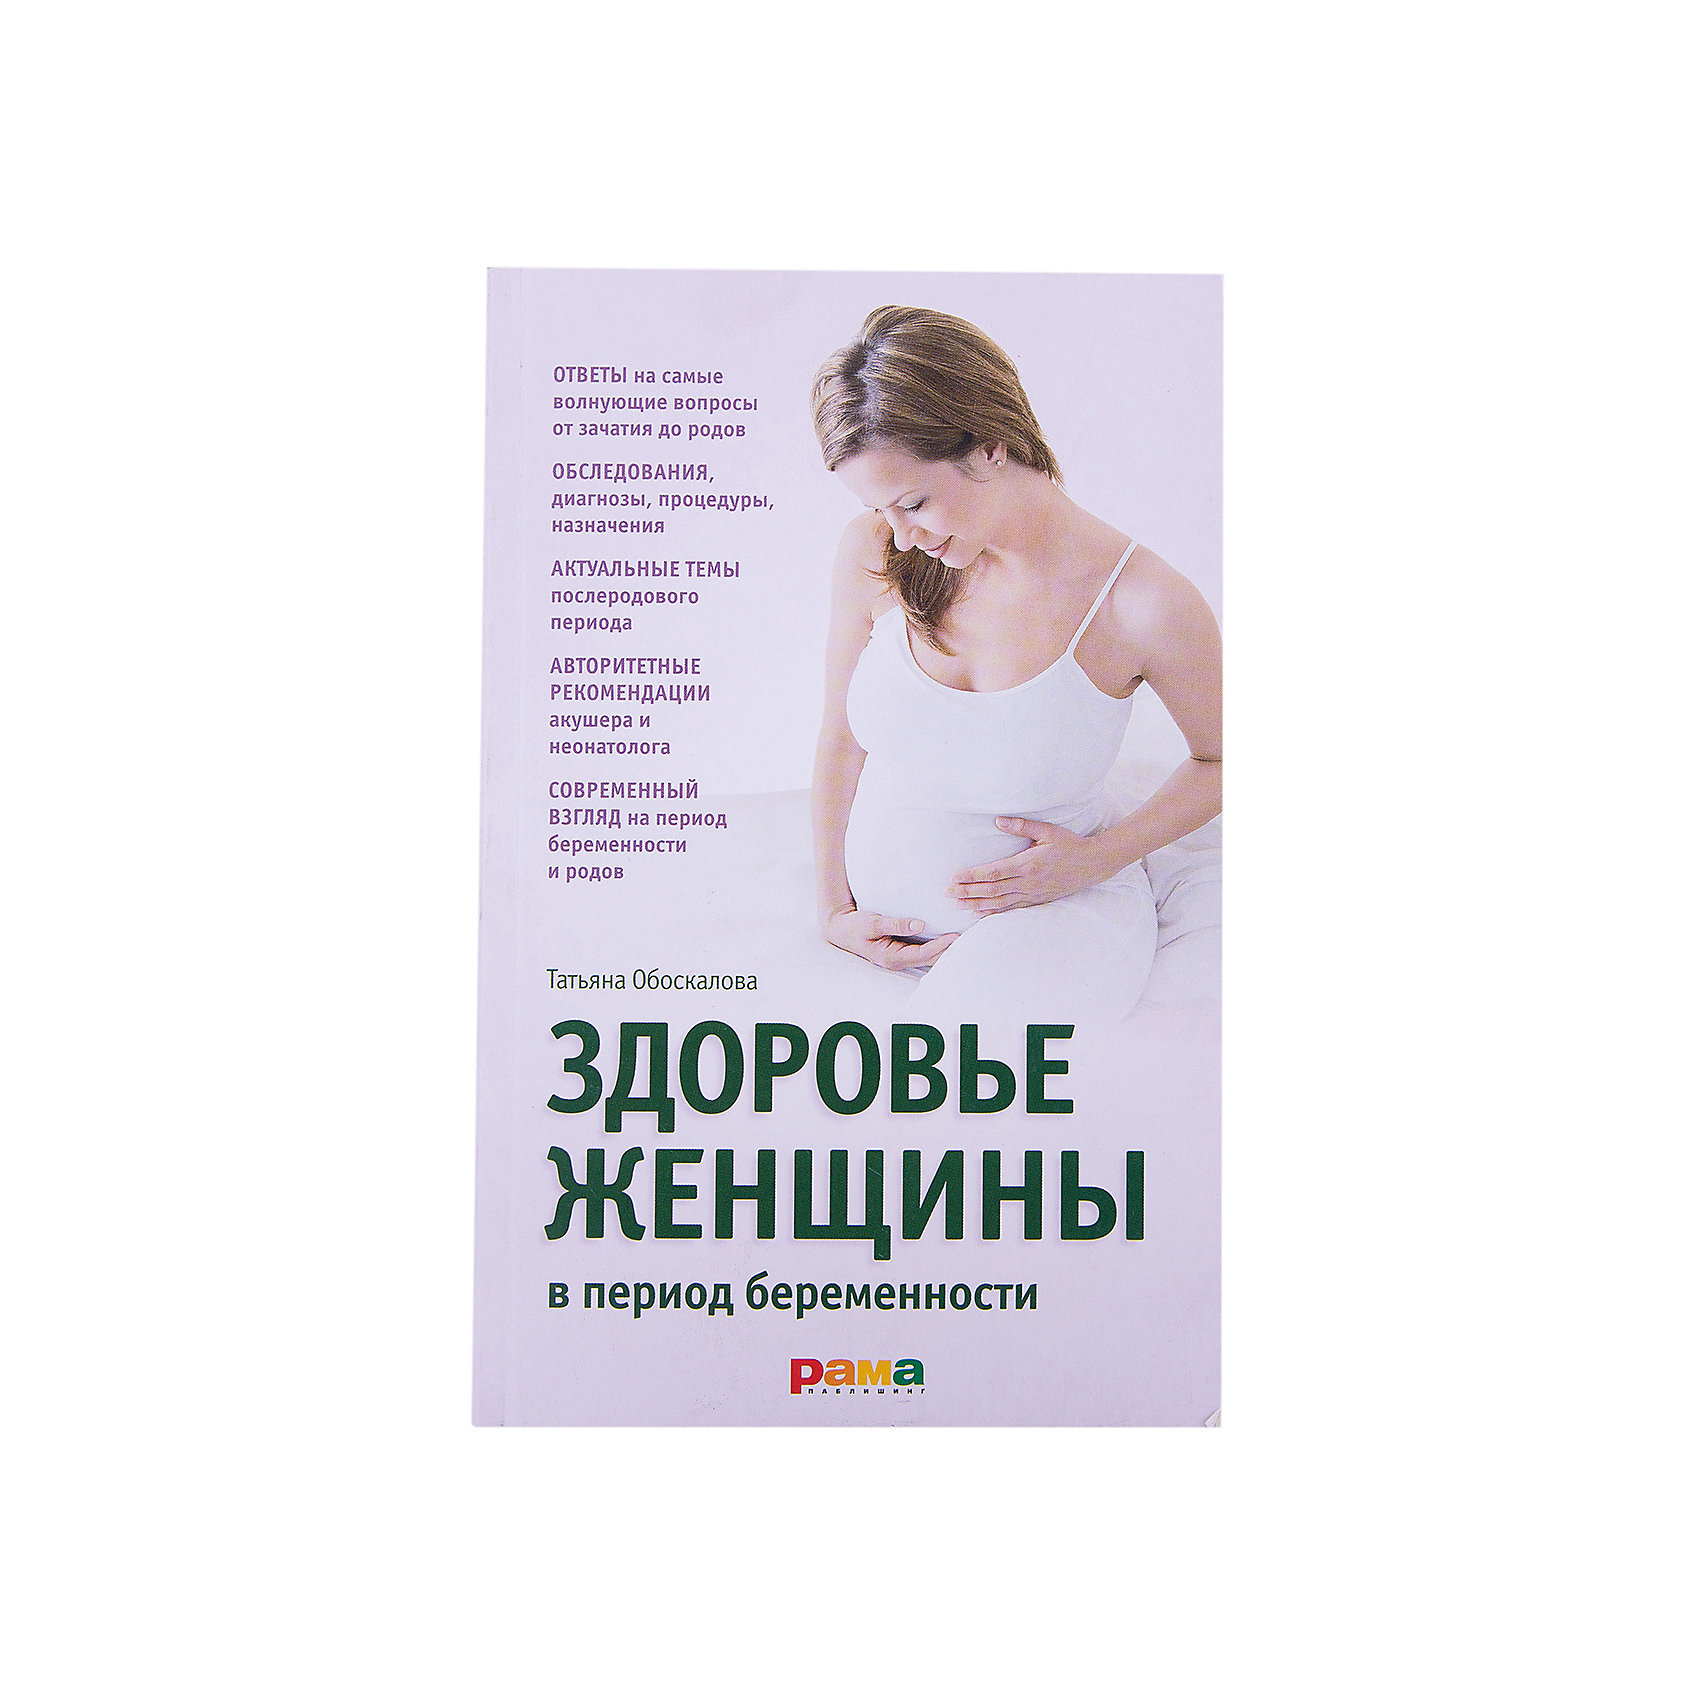 Здоровье женщины книга. Книги про беременность. Женское здоровье книга. Топ книг для беременных. Беременность книга для беременных.